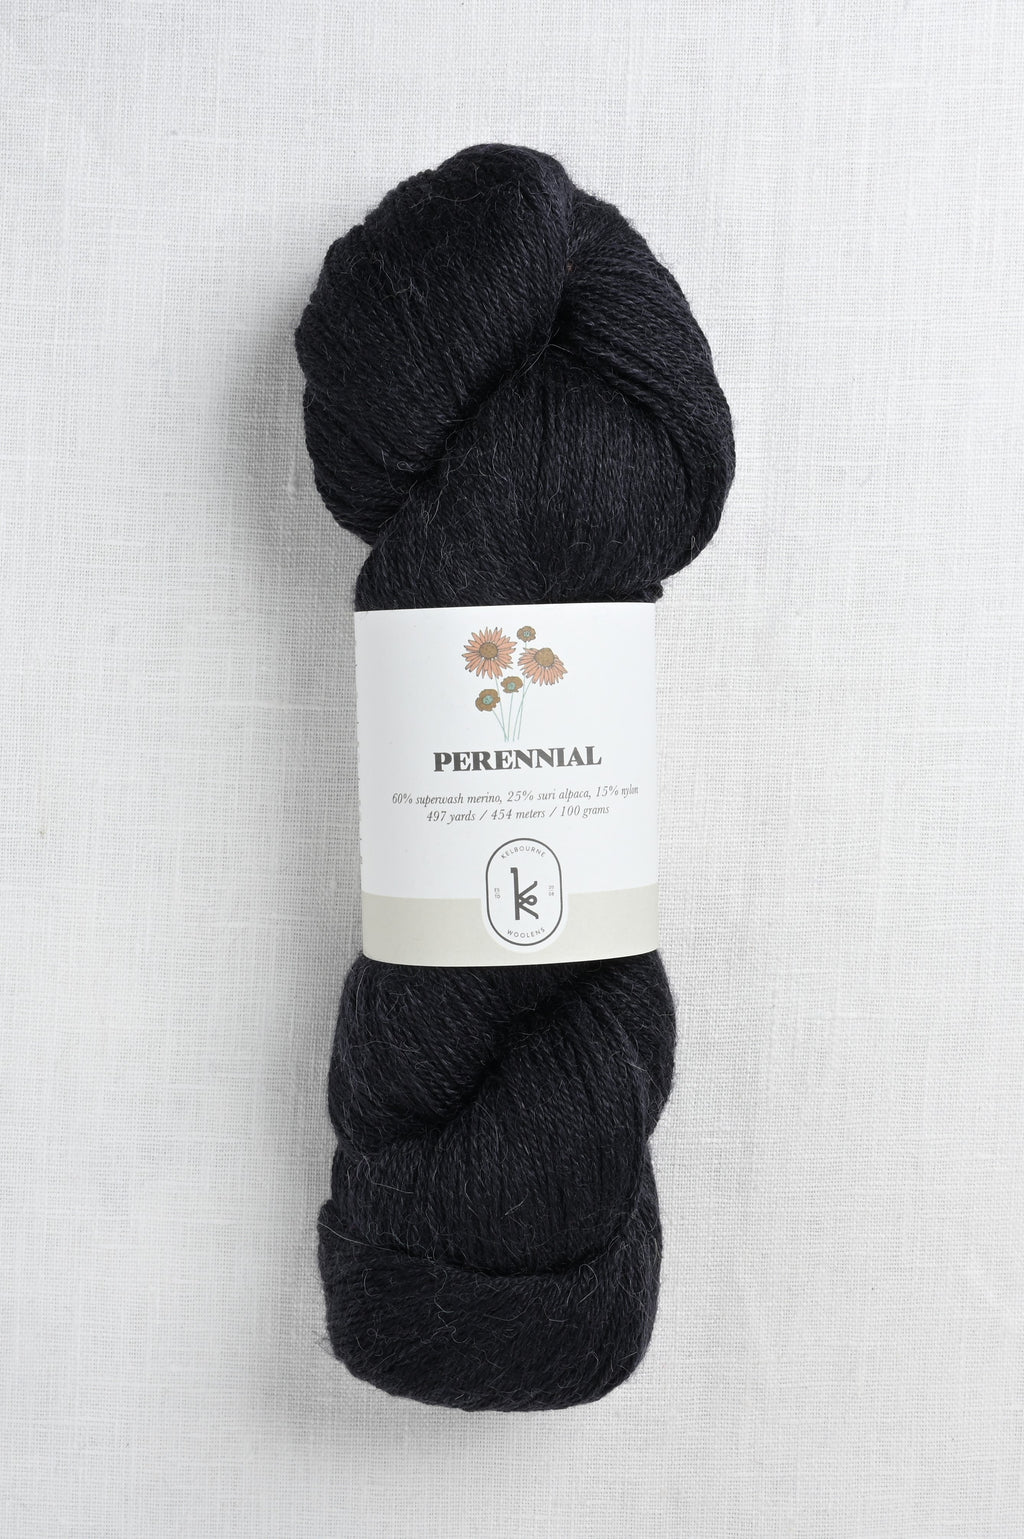 kelbourne woolens perennial 5 black